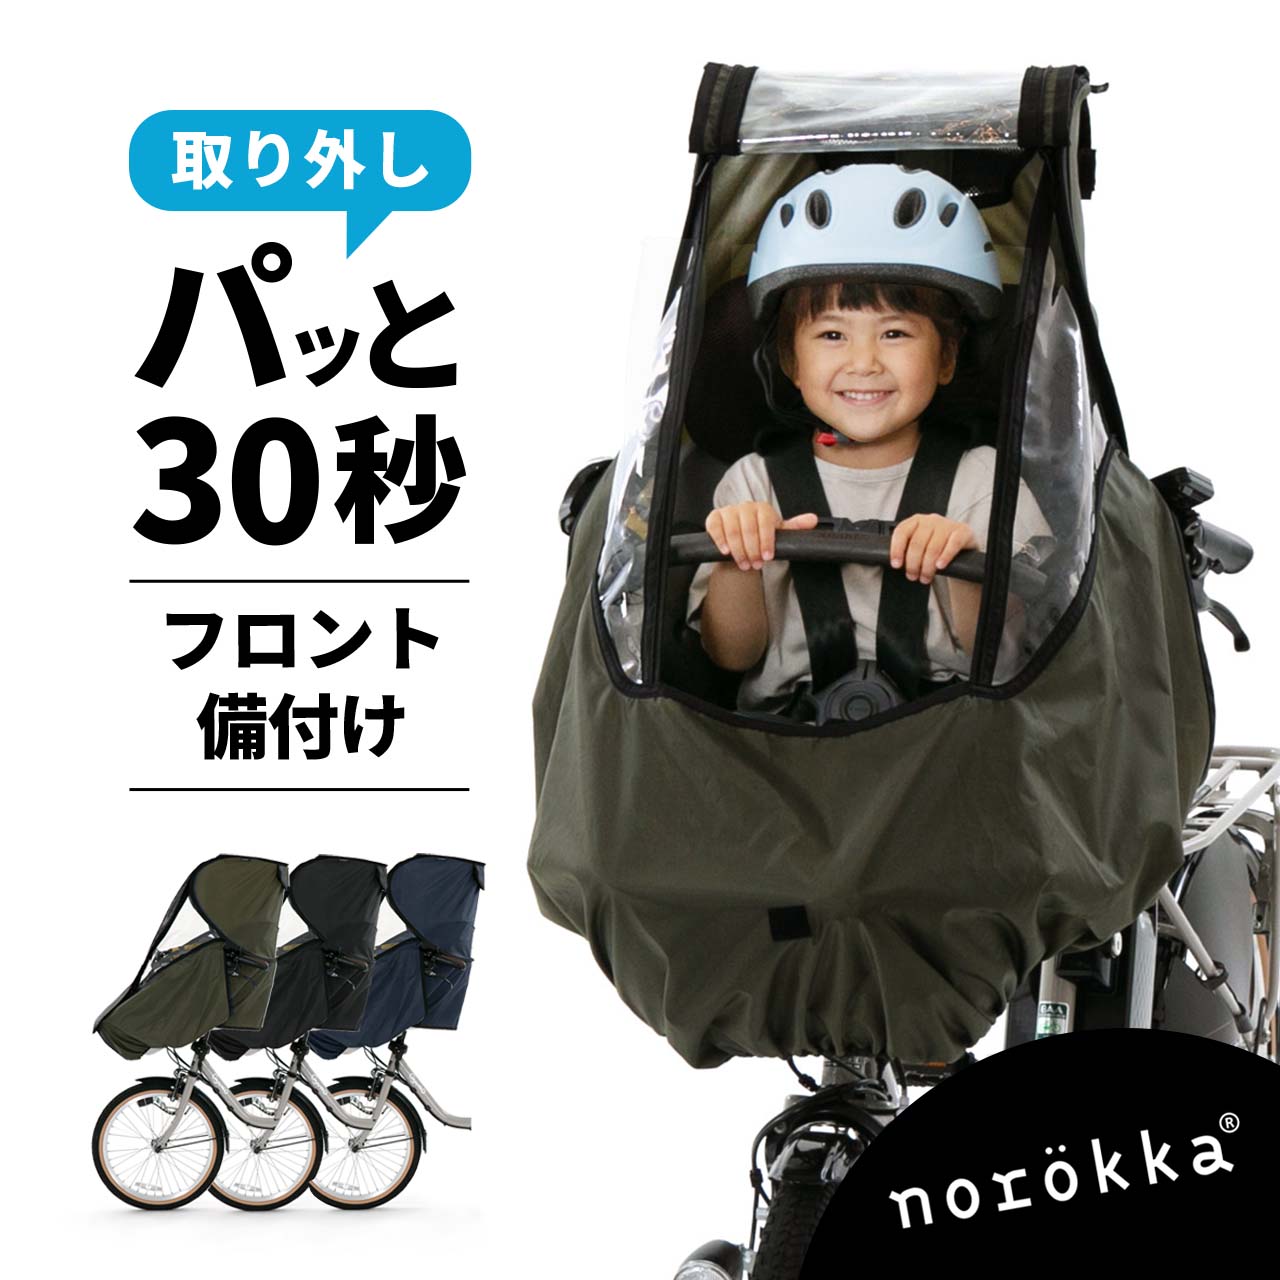 【最終値下げ】norokka自転車 レインカバー 後 子供